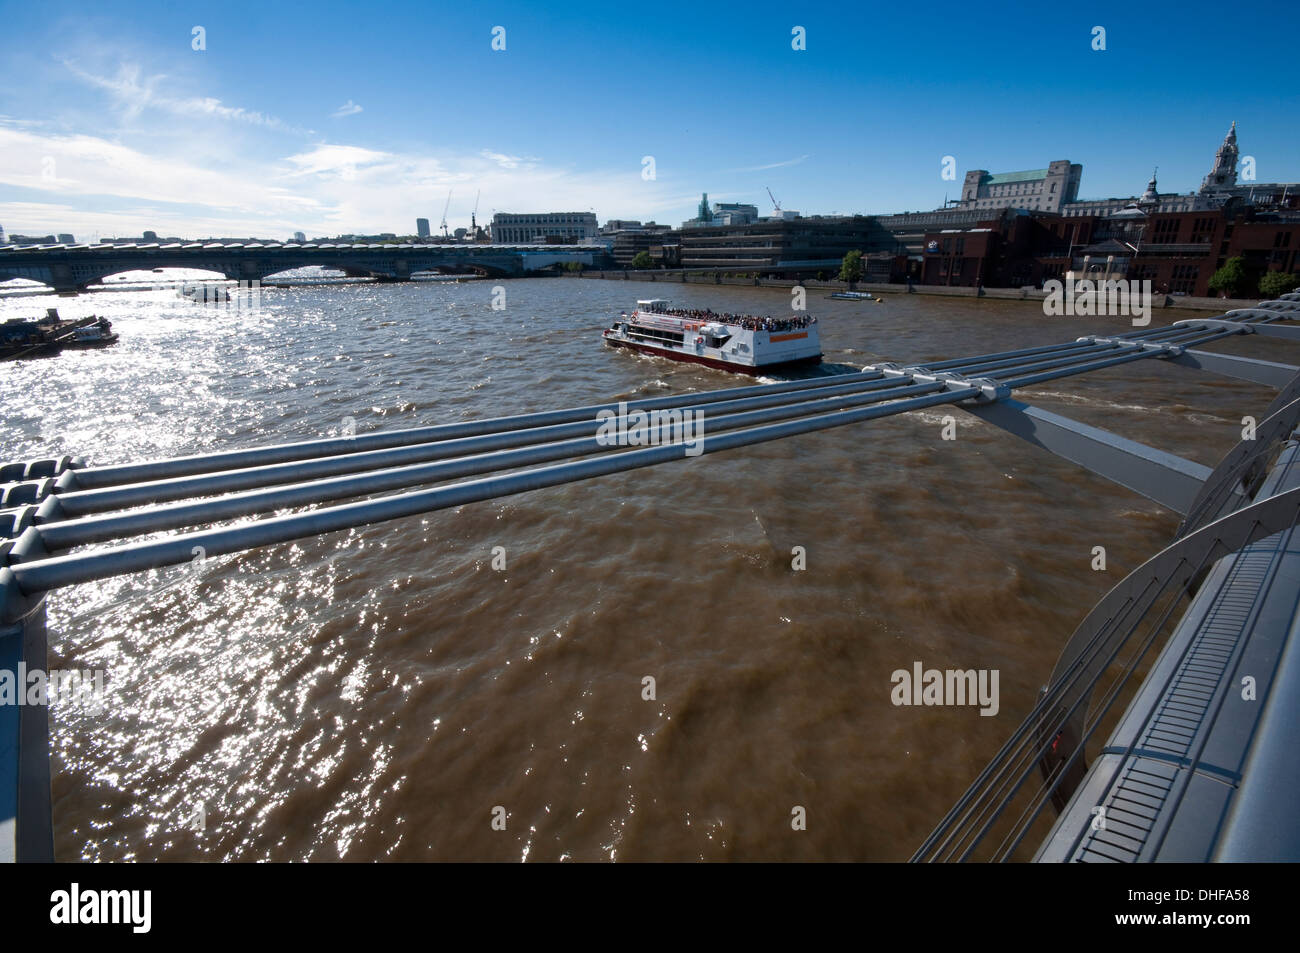 Inglaterra, Londres, Southwark, el puente Millennium, el Río Támesis, turistas Barco Foto de stock